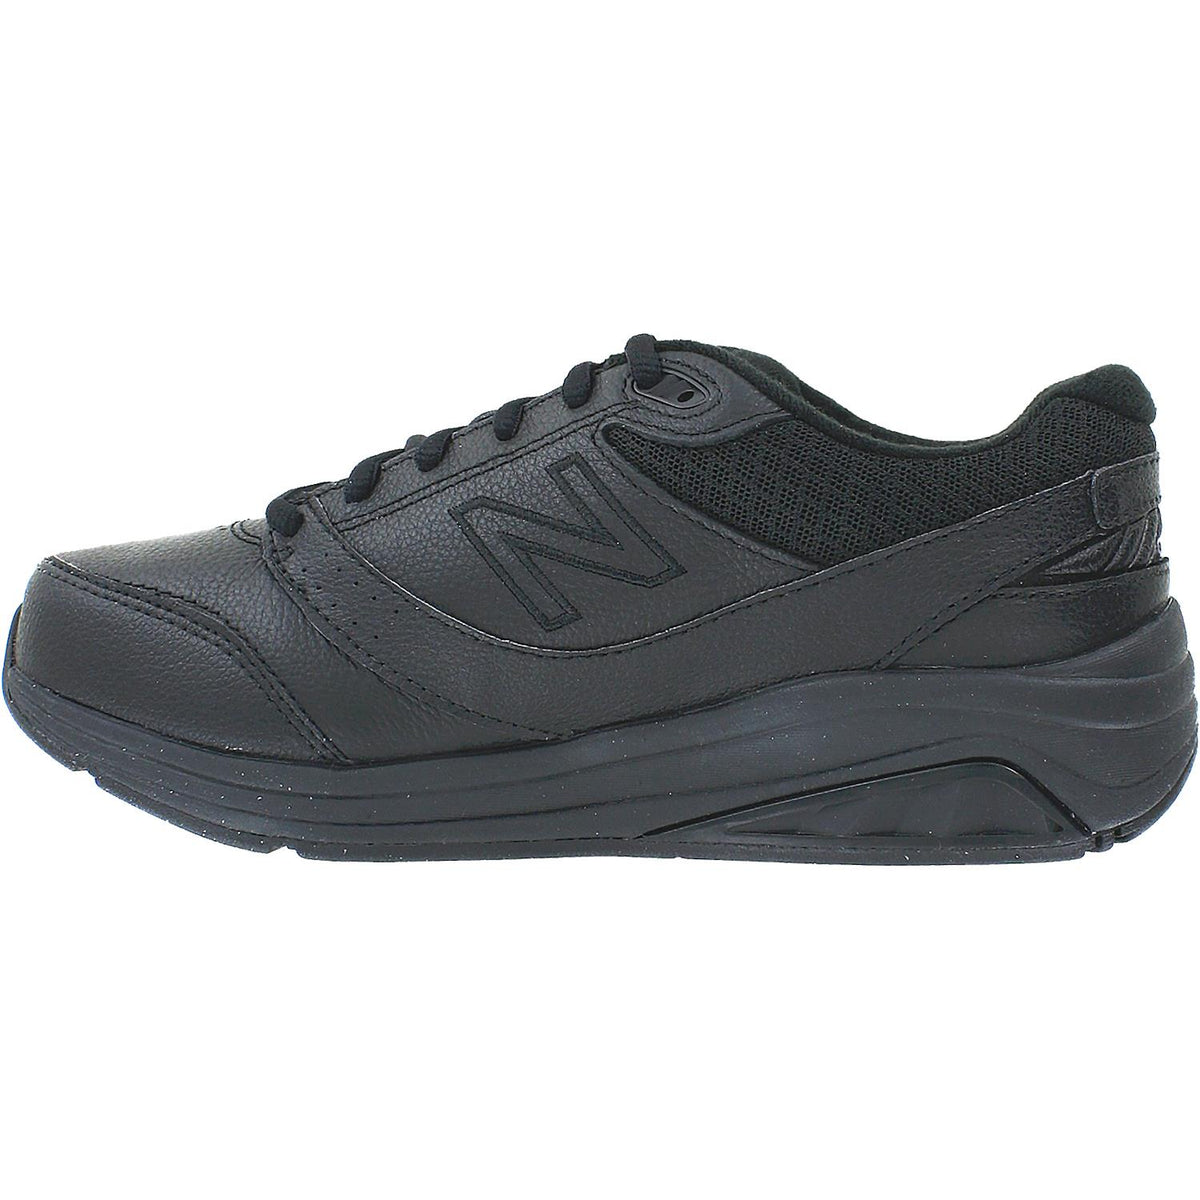 Women's New Balance WW928BK3 Walking Shoes Black Leather – Footwear etc.